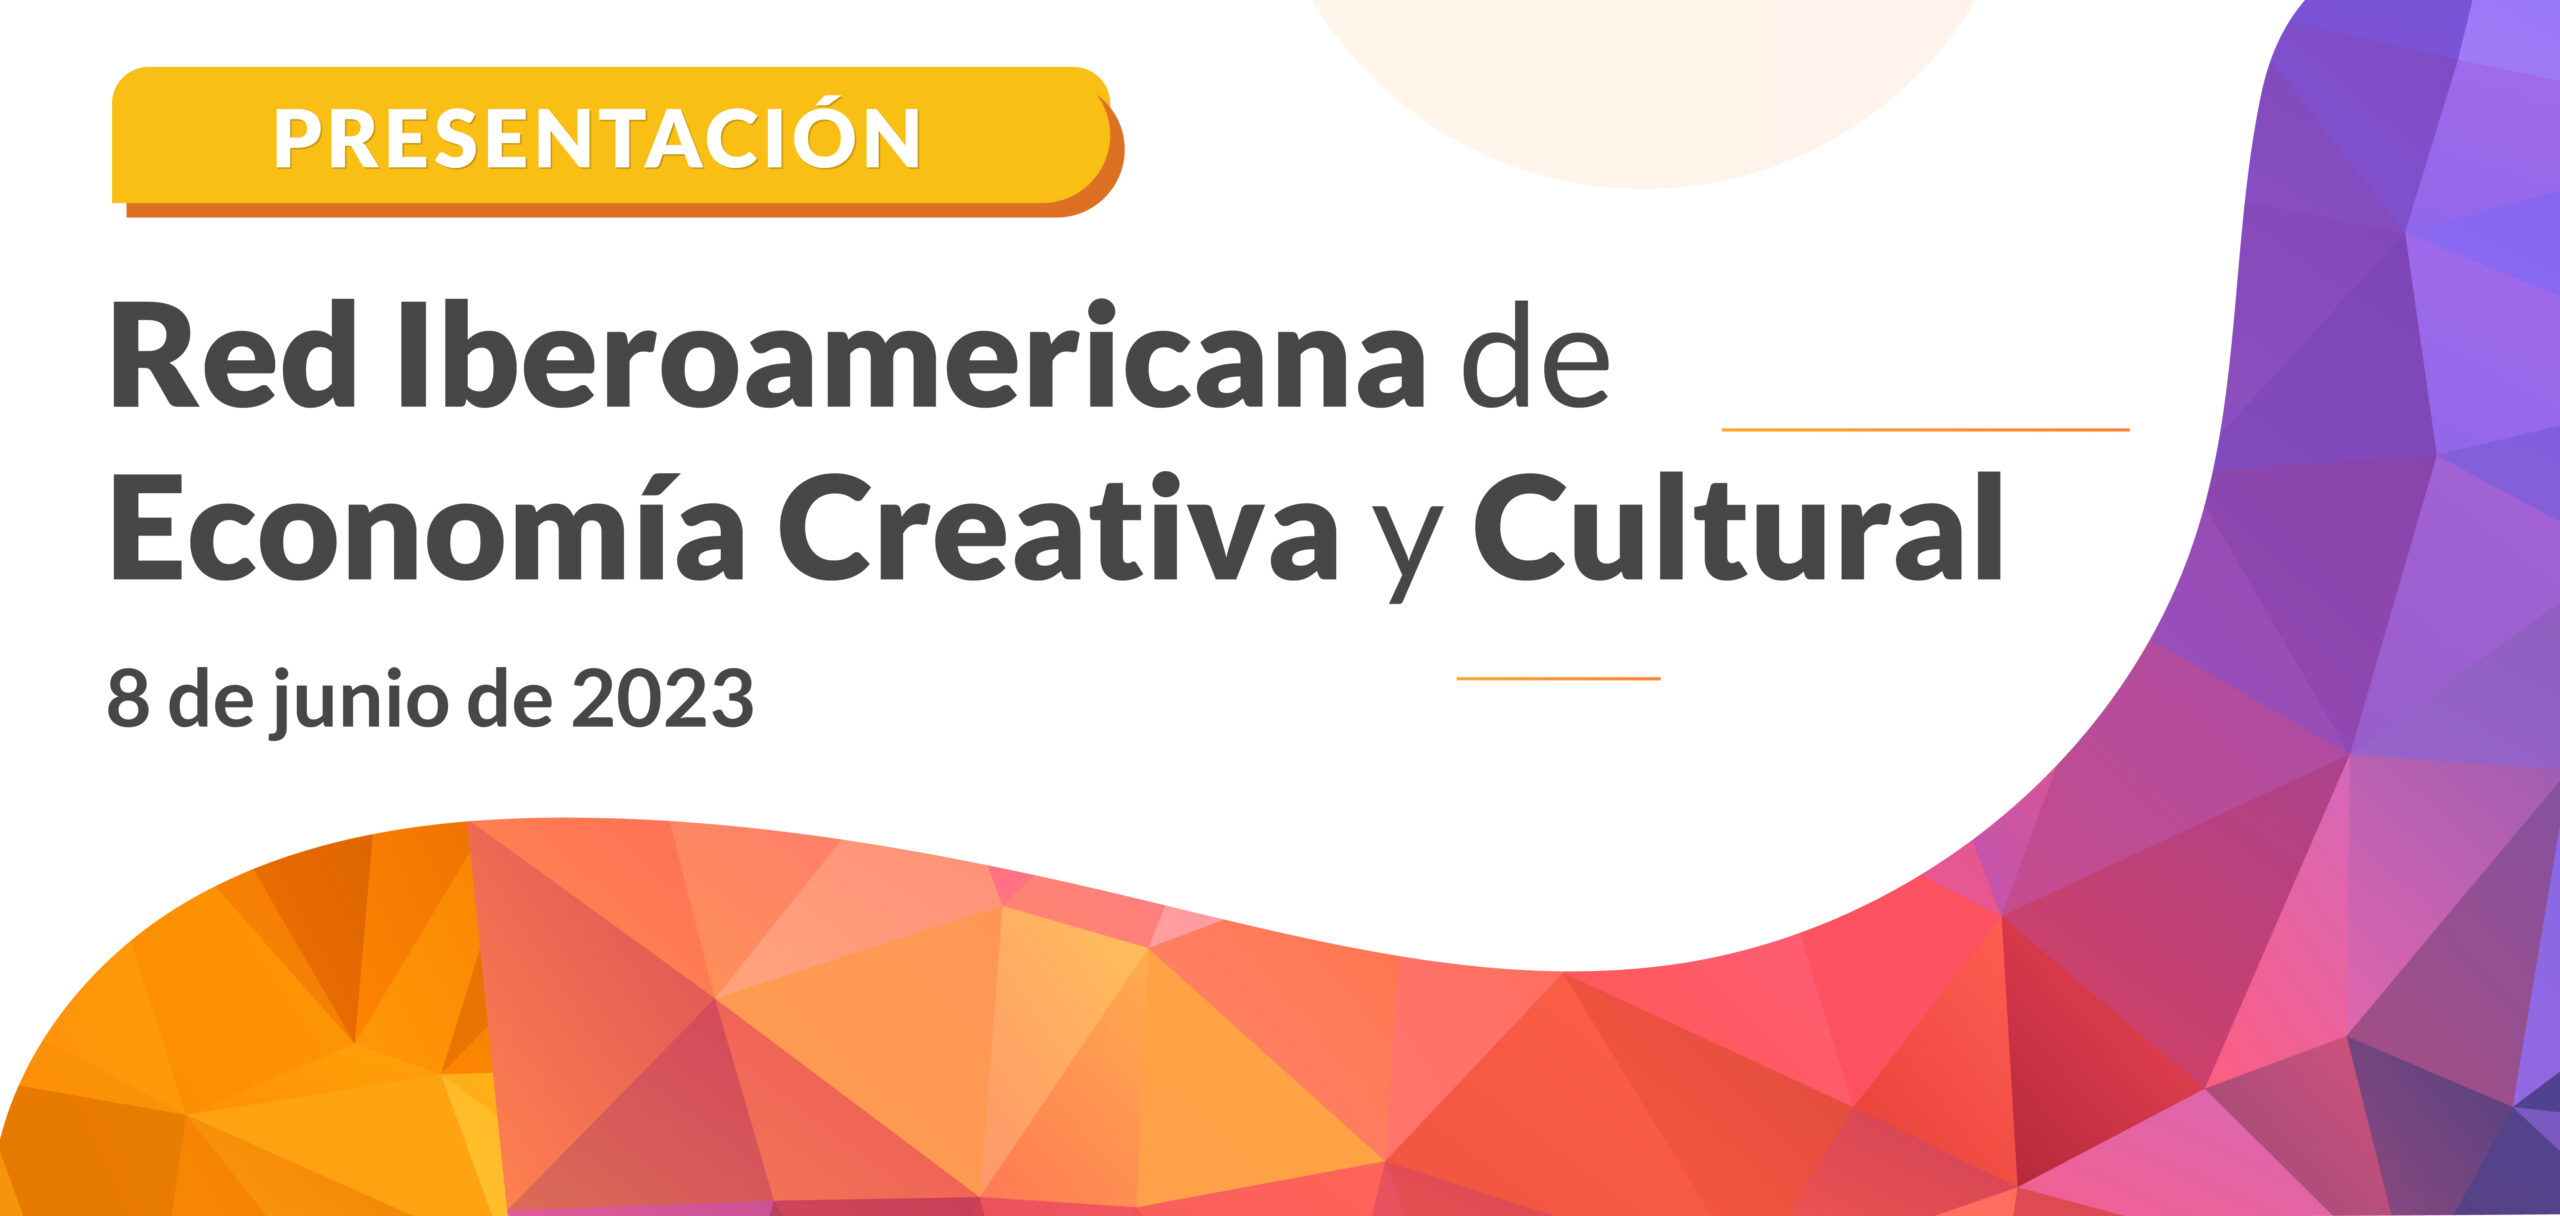 La Cátedra IARICC lidera la Red Iberoamericana de Economía Creativa y Cultural